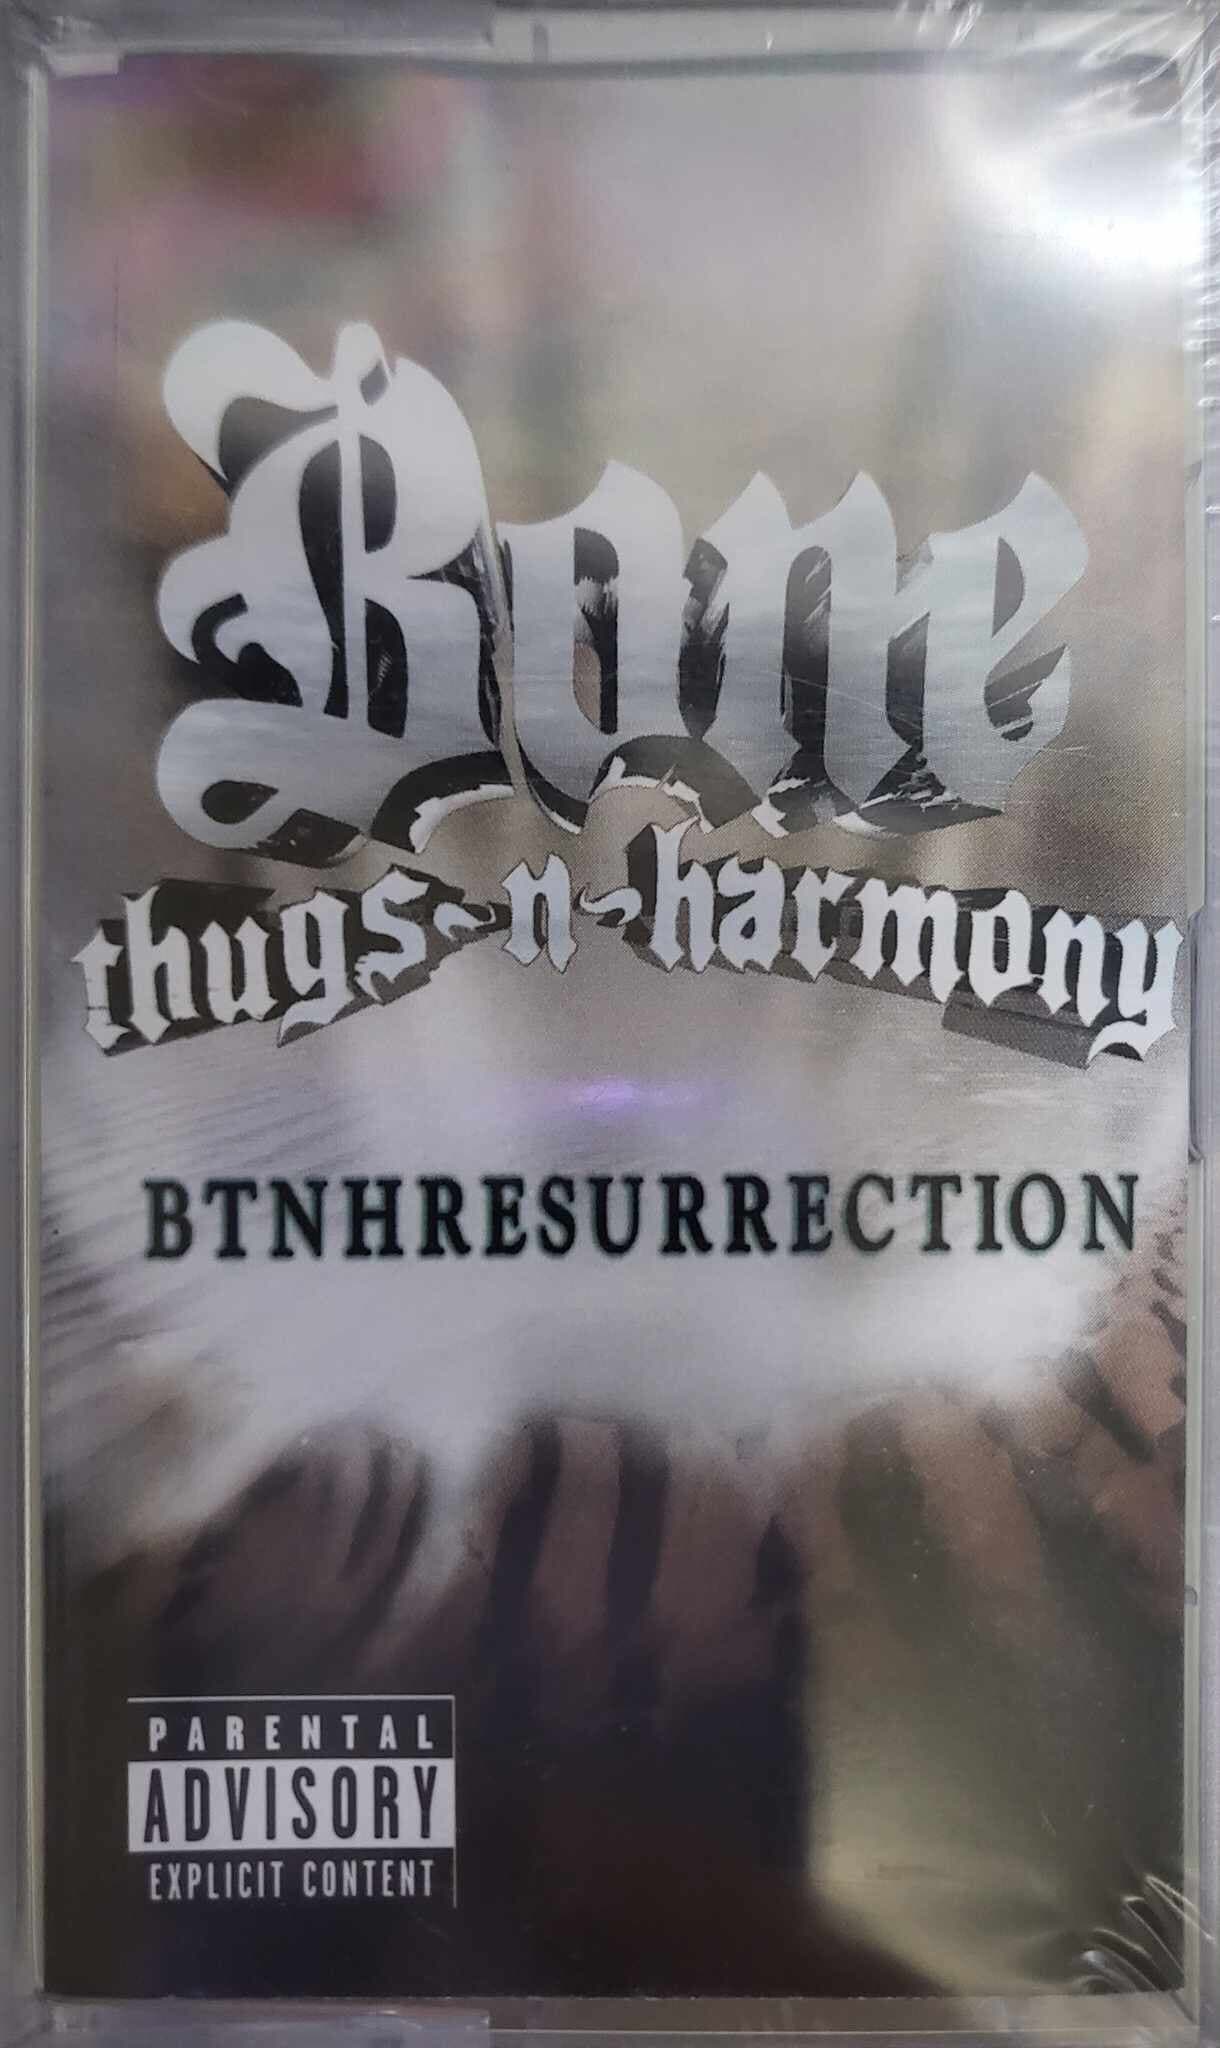 (카세트 테이프) Bone Thugs-N-Harmony (본 썩스 앤 하모니) - Btnhresurrection